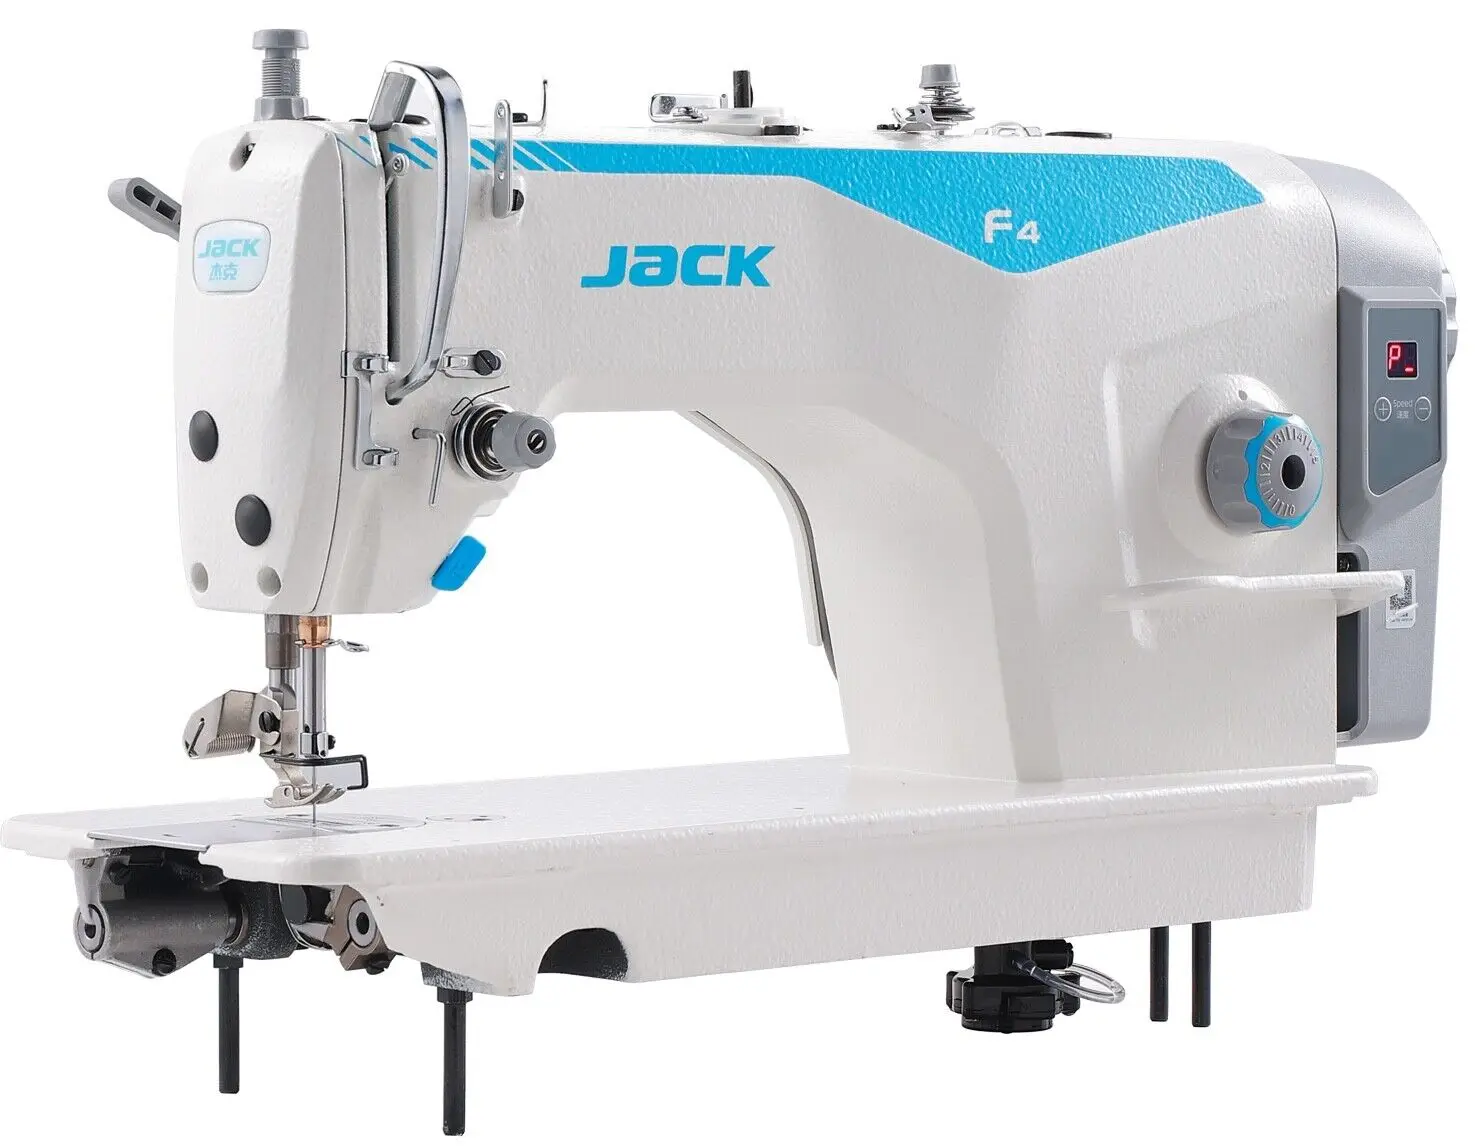 

Летняя скидка 50% Φ для нового Джека F4 прямой привод без отделки LOCKSTITCH промышленная швейная машина